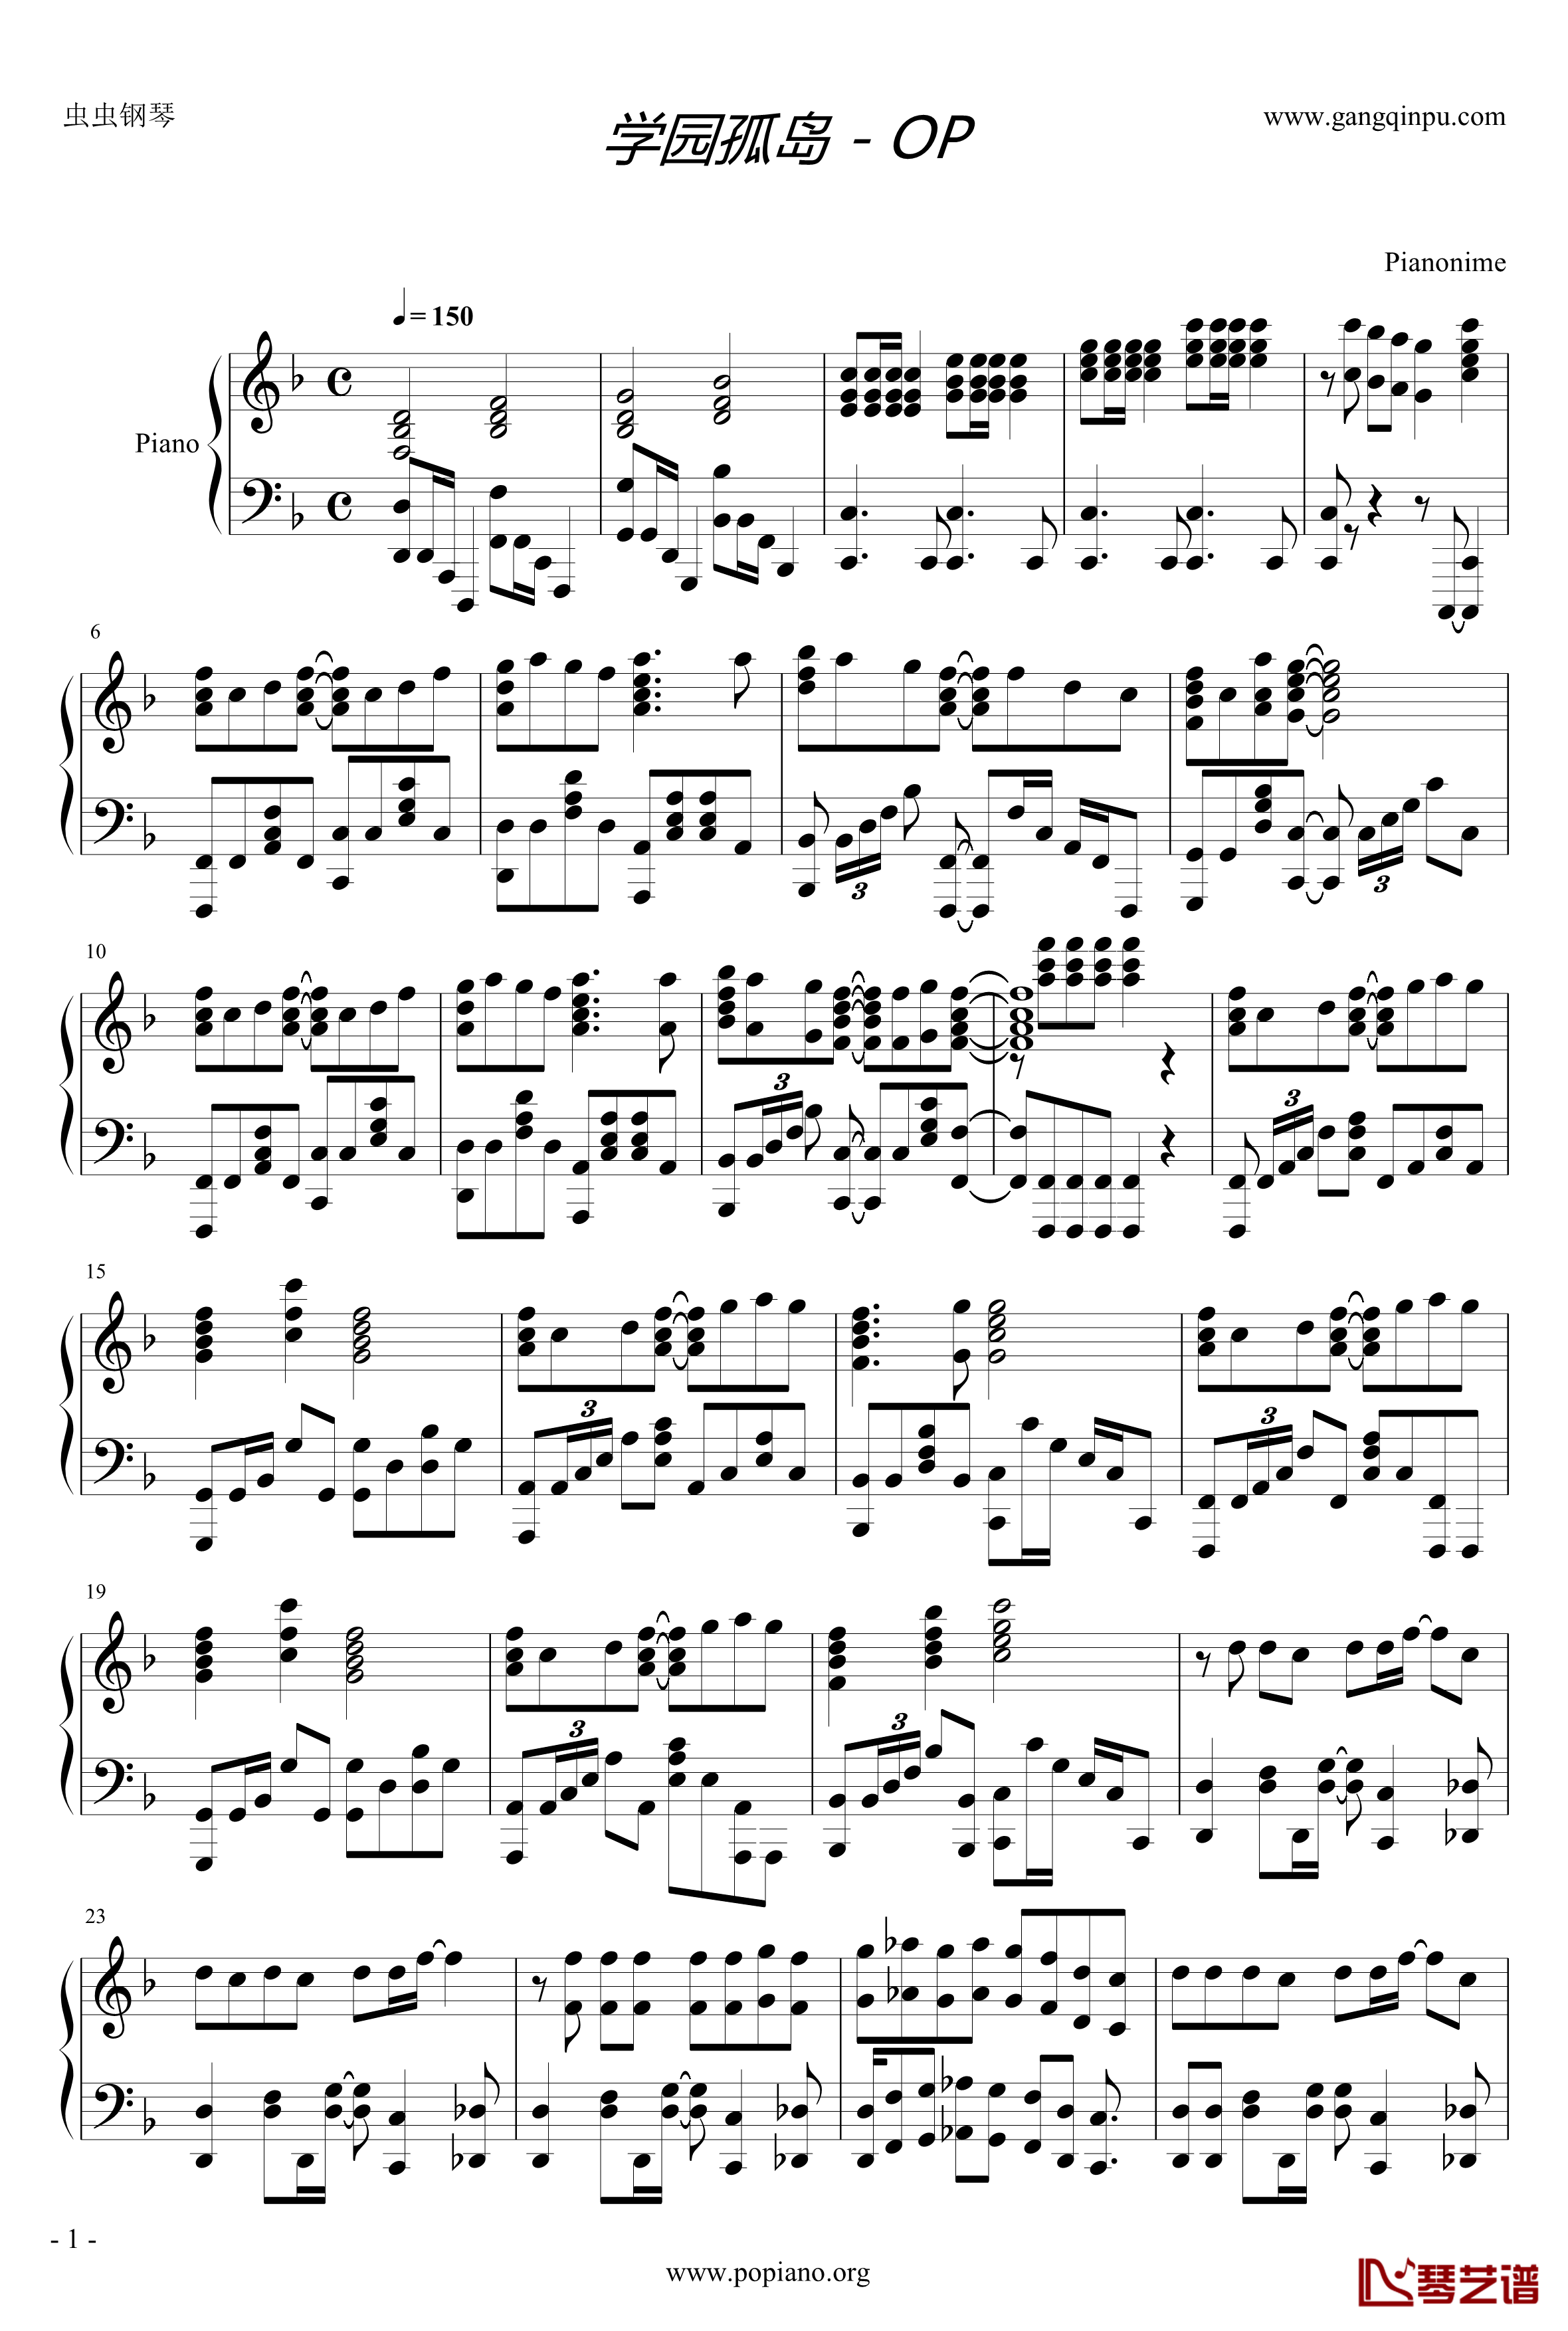 学园孤岛-OP钢琴谱-Pianonime1